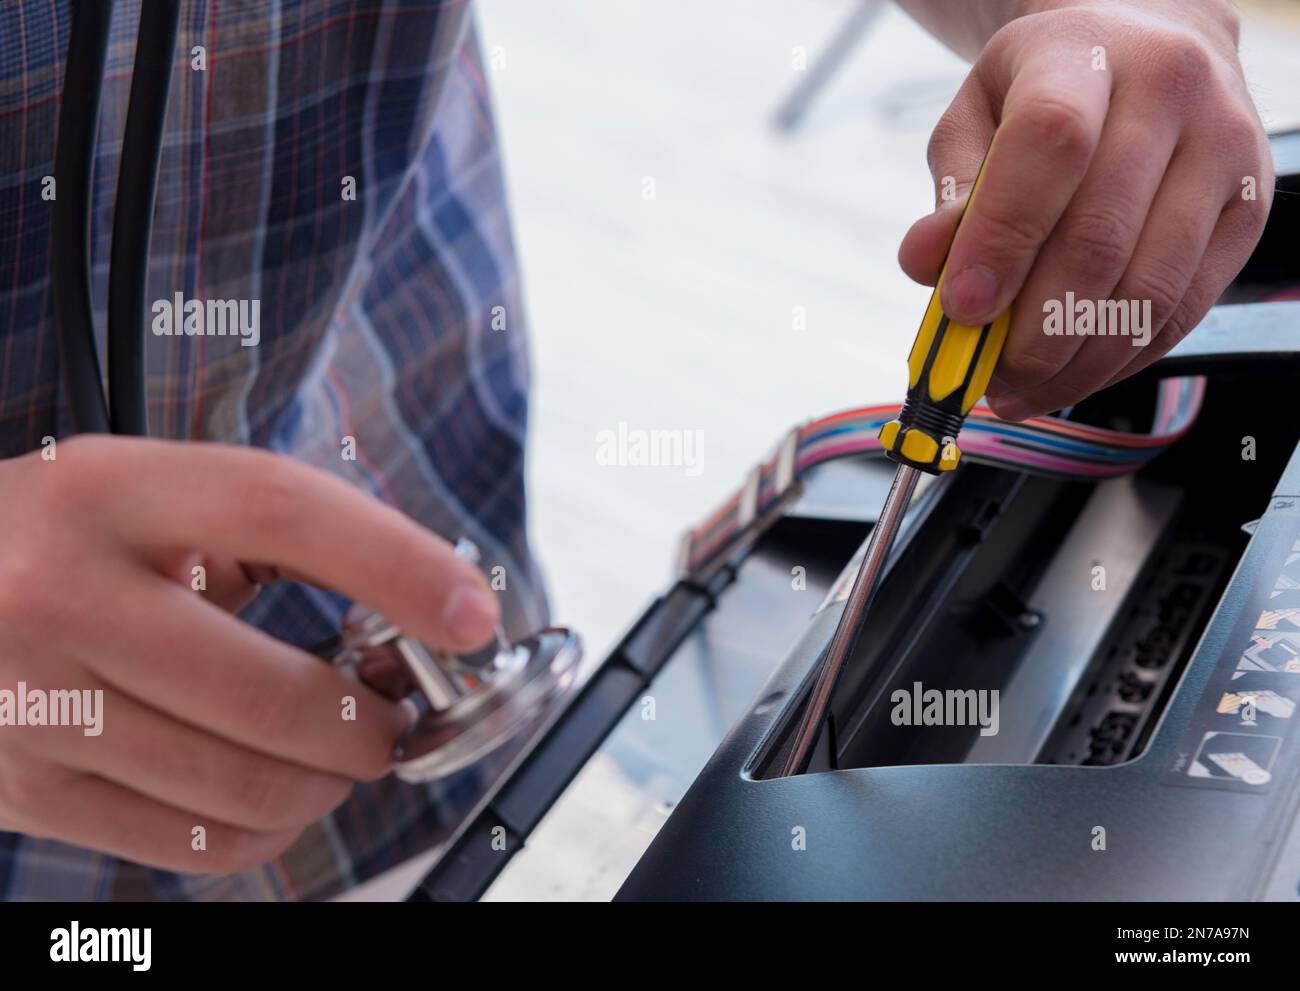 The repairman repairing broken color printer Stock Photo